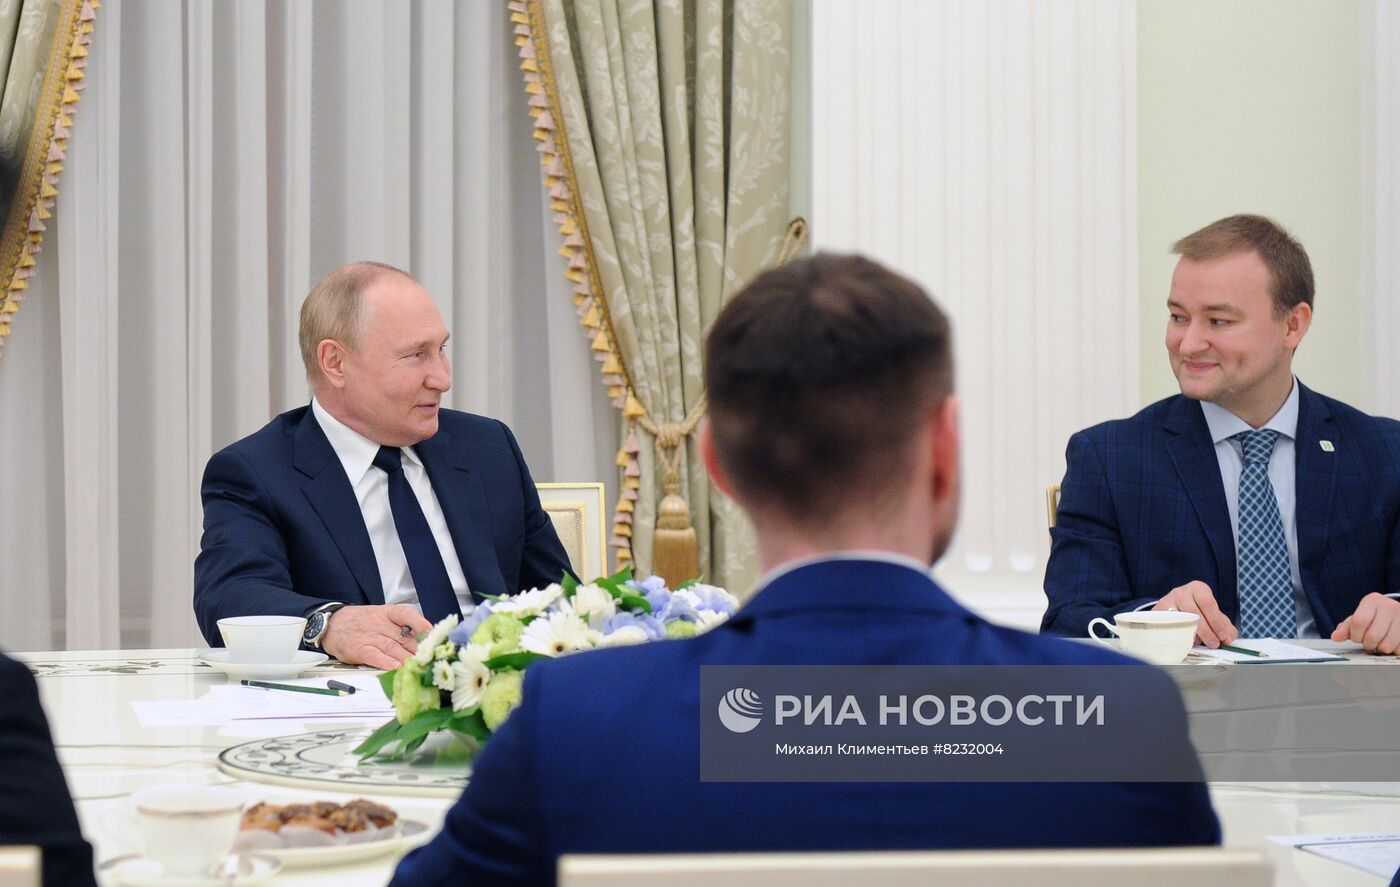 Рабочая встреча президента РФ В. Путина с победителями конкурса "Лидеры России"